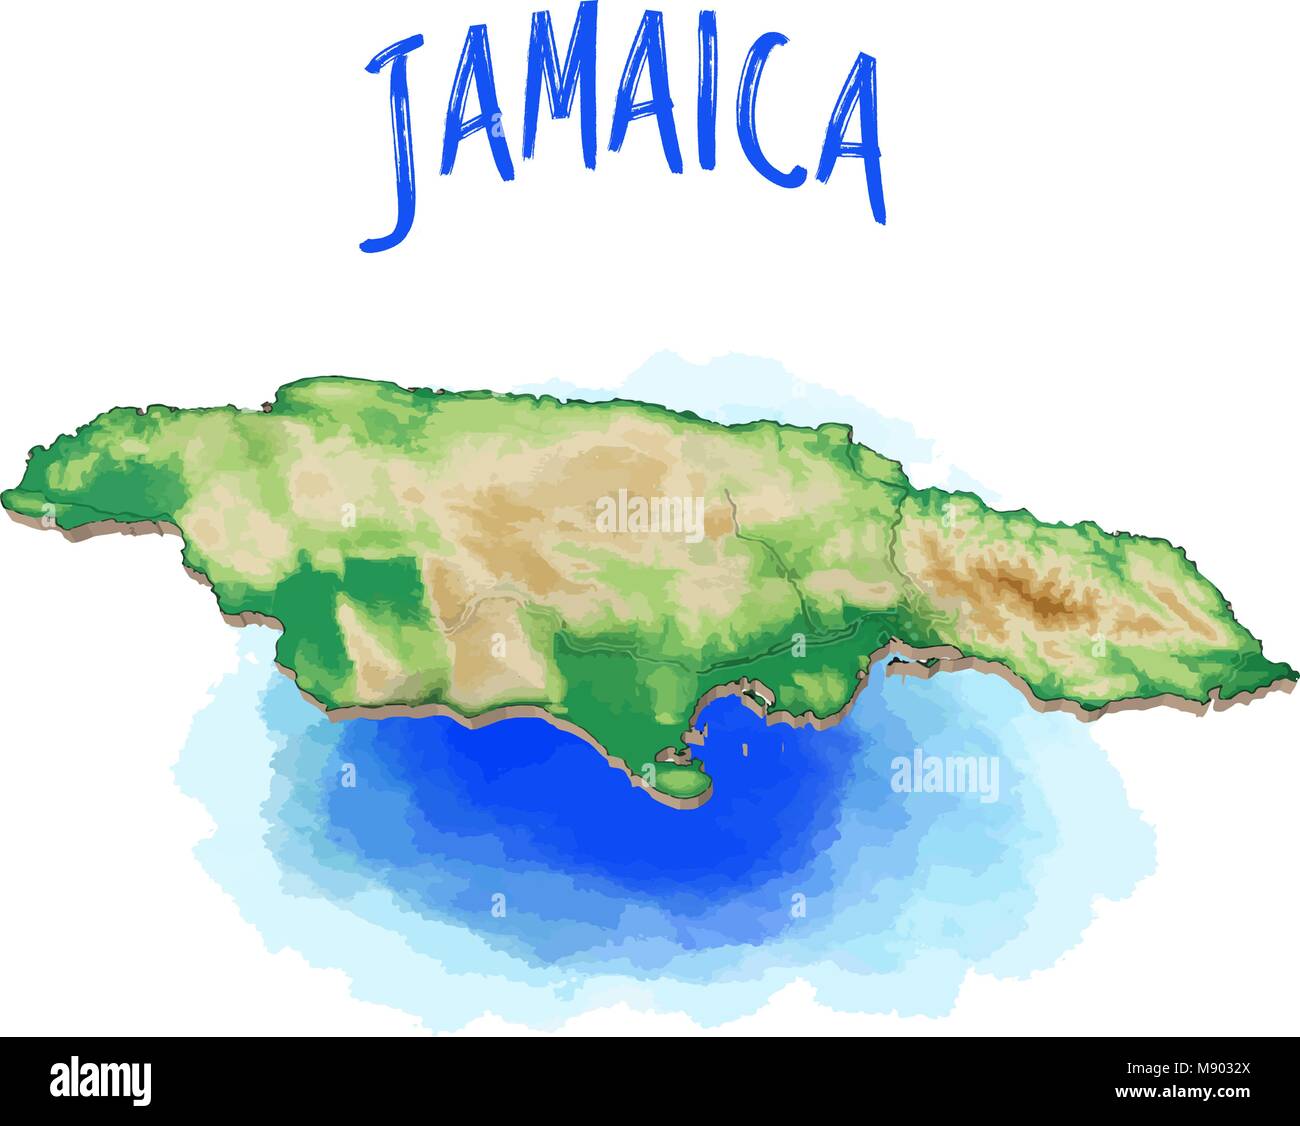 Mappa 3D della Jamaica - Caraibi - Illustrazione Vettoriale, topografiche versione. Utilizzare per Travel Marketing e produzione di stampa. Illustrazione Vettoriale